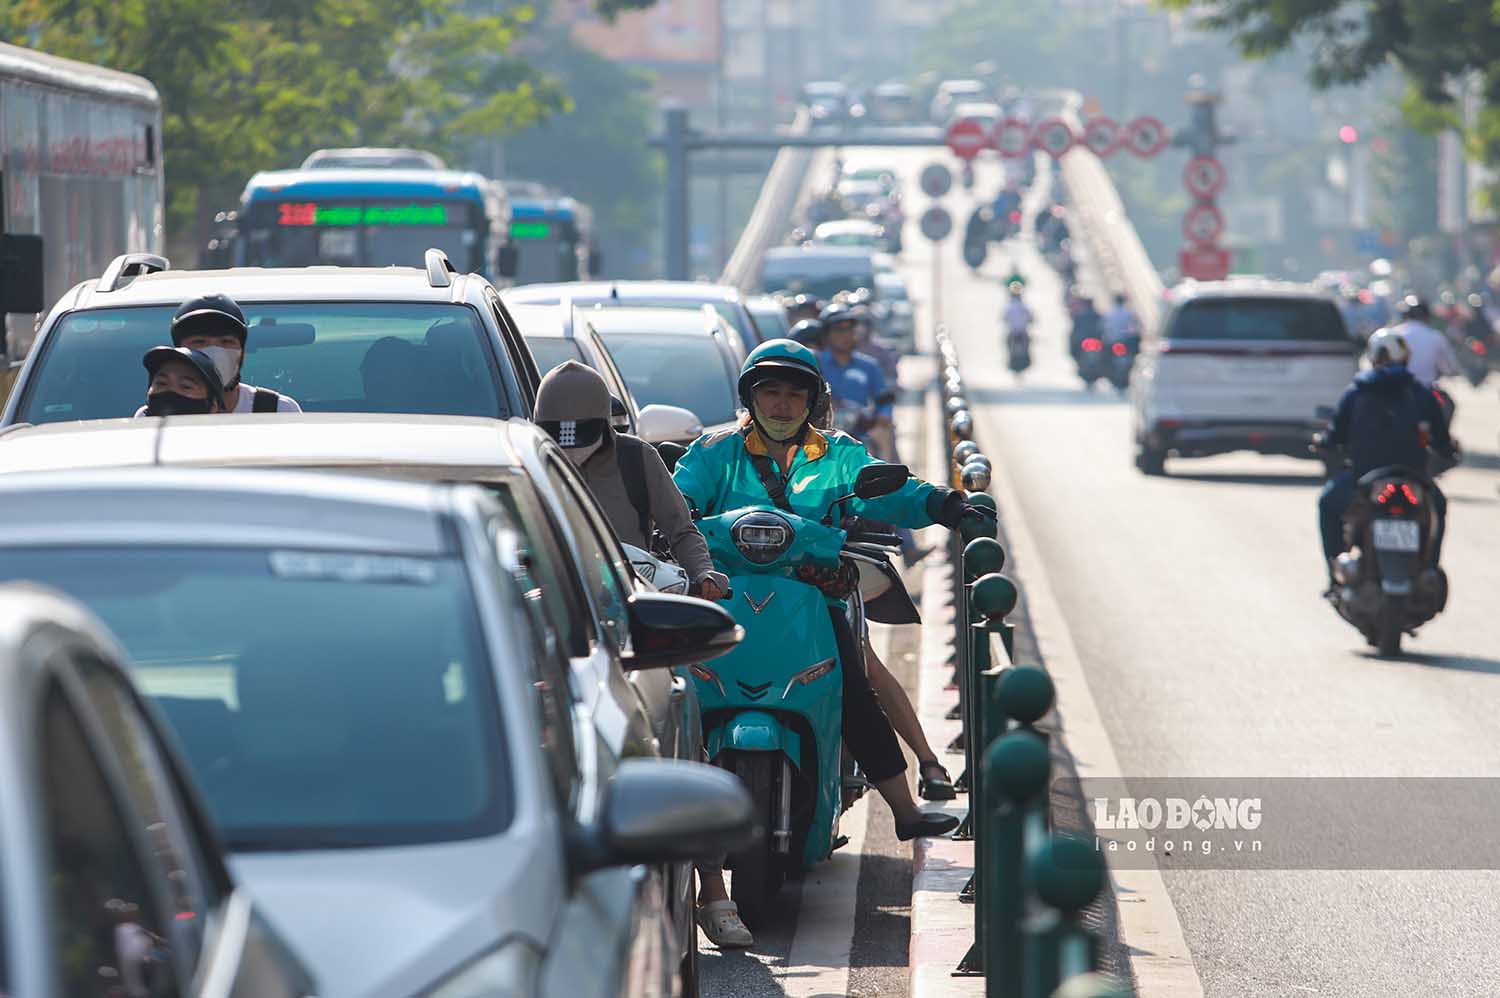 Mật độ phương tiện lưu thông trên phố Chùa Bộc ở cả 2 chiều vào giờ cao điểm rất lớn. Các tình huống xung đột giao thông xảy ra có thể khiến tuyến đường ùn ứ cục bộ ở nhiều vị trí.